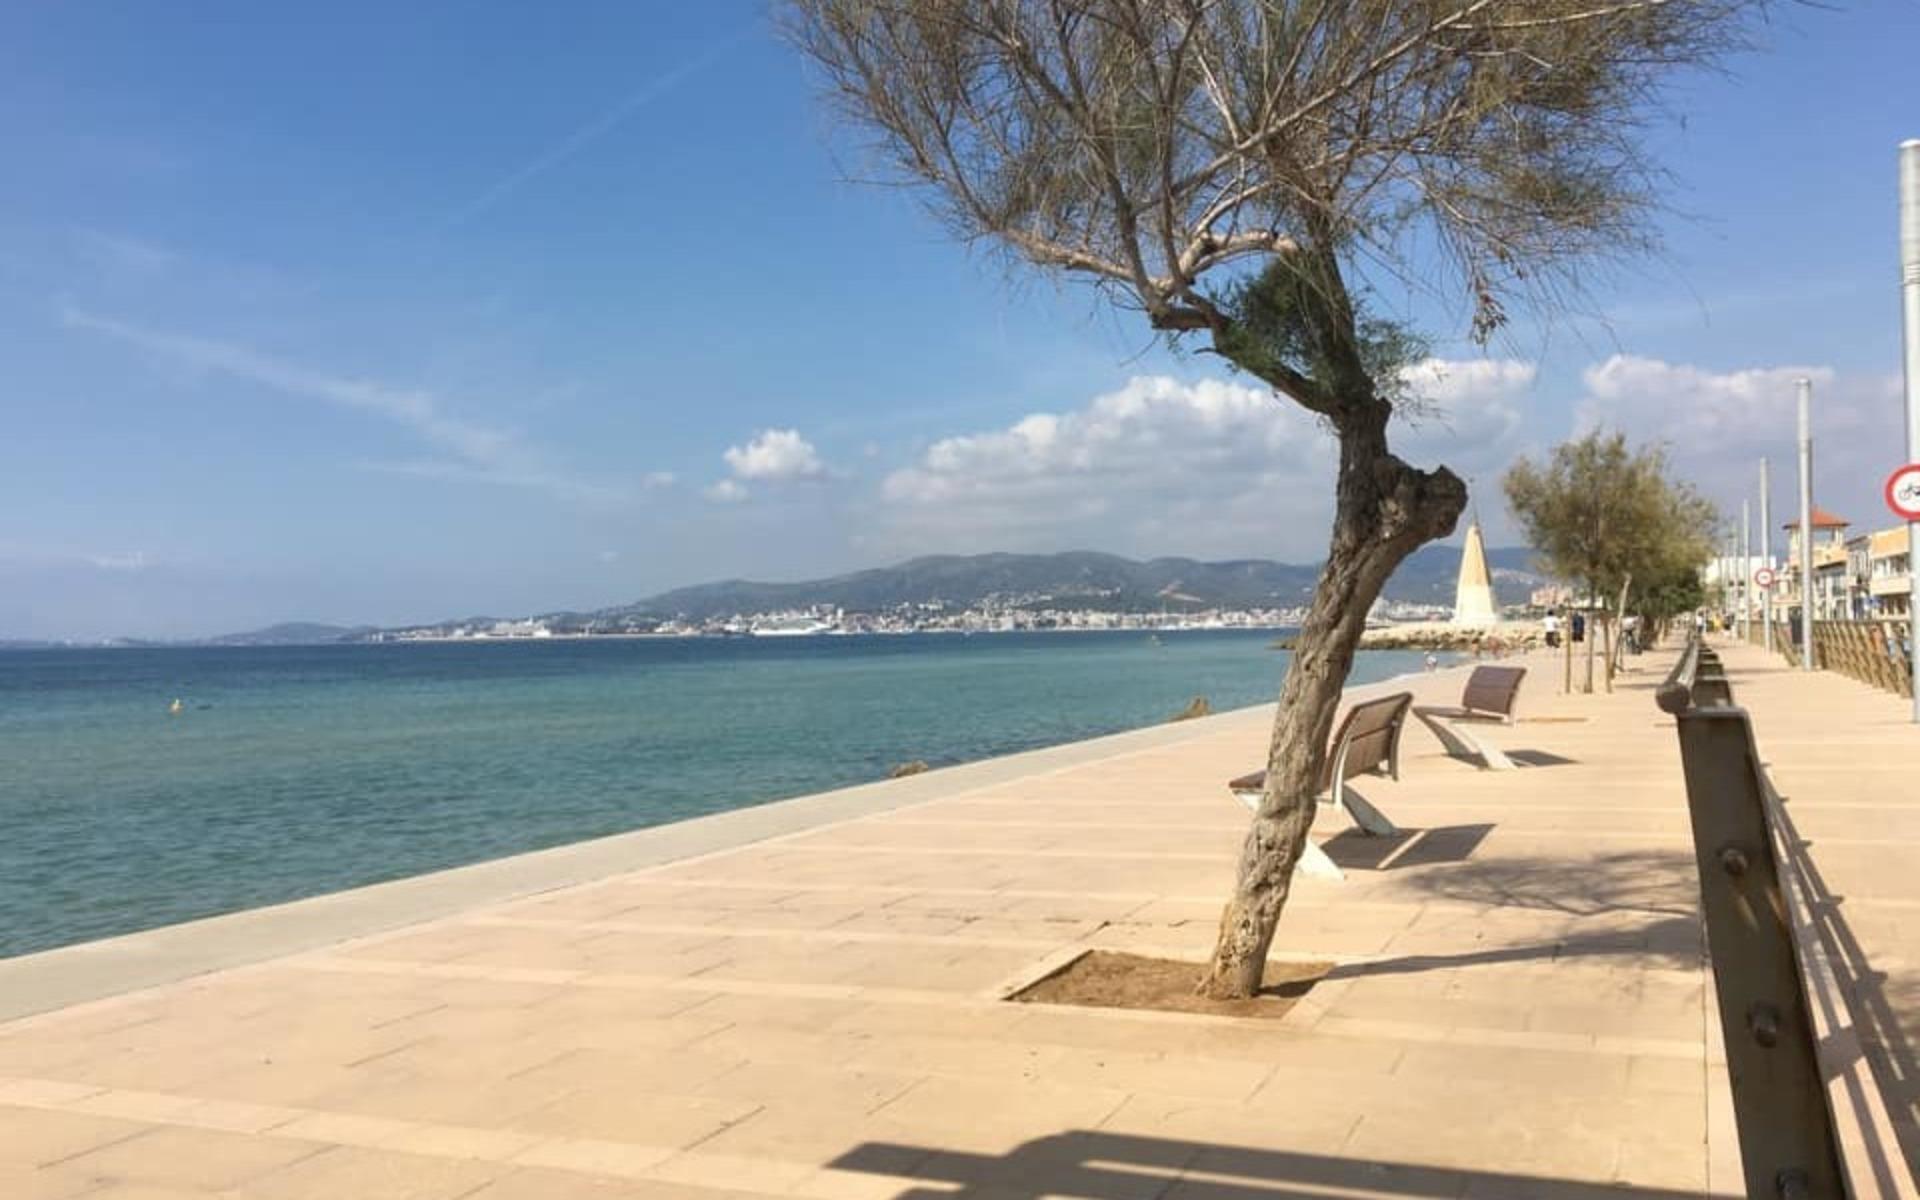 Birgitta Sekund har delat med sig av semestern på Mallorca: ”Palma på Mallorca. När livet är som bäst, det ska va’ gött å leva”, skriver hon.